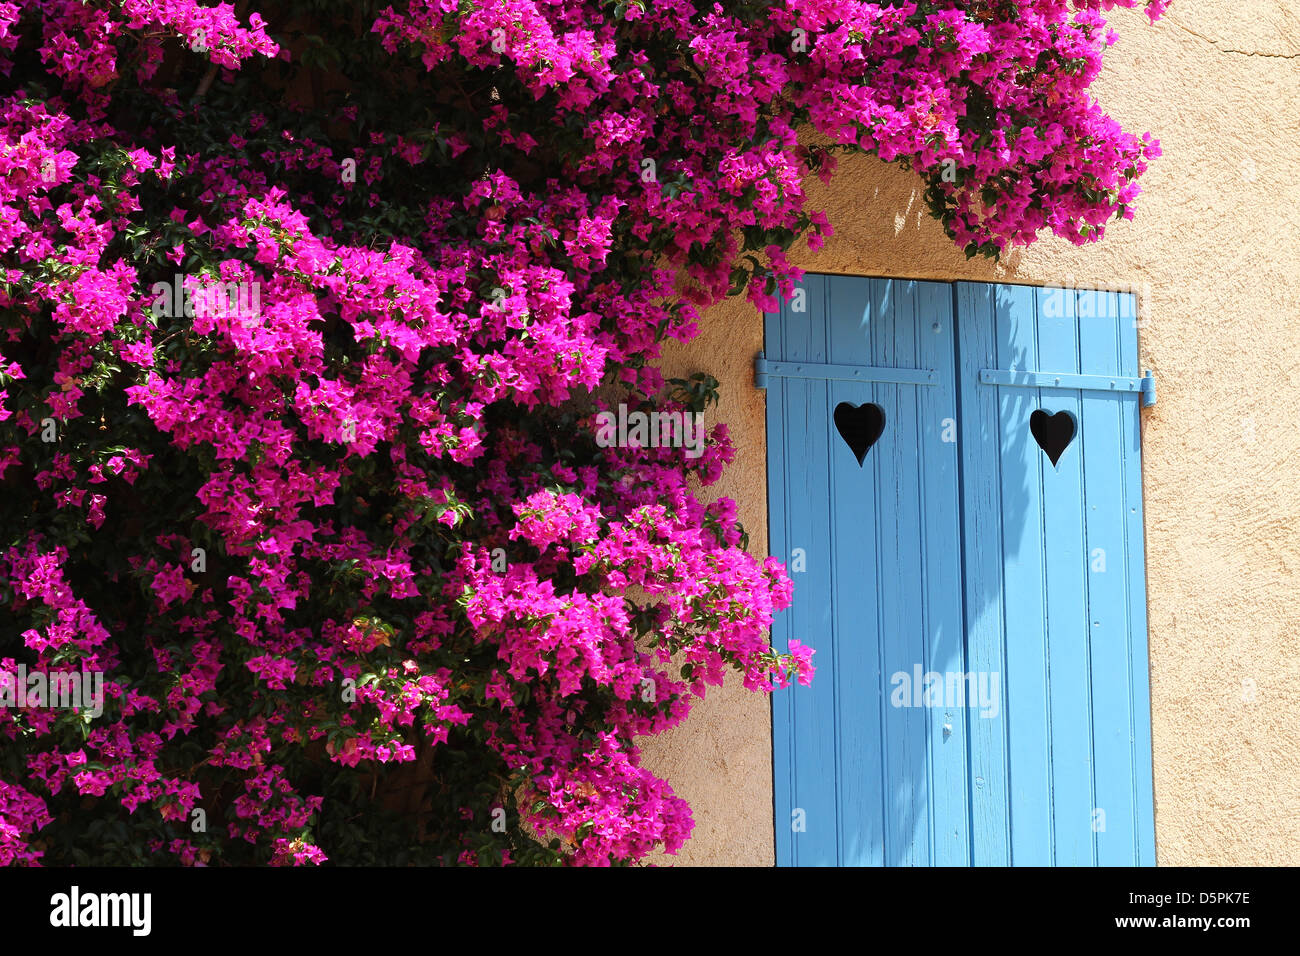 Un día soleado de verano en Porquerolles, Riviera Francesa. El Bougainvillea bush alrededor de la ventana con contraventanas azules con cortes en forma de corazón Foto de stock